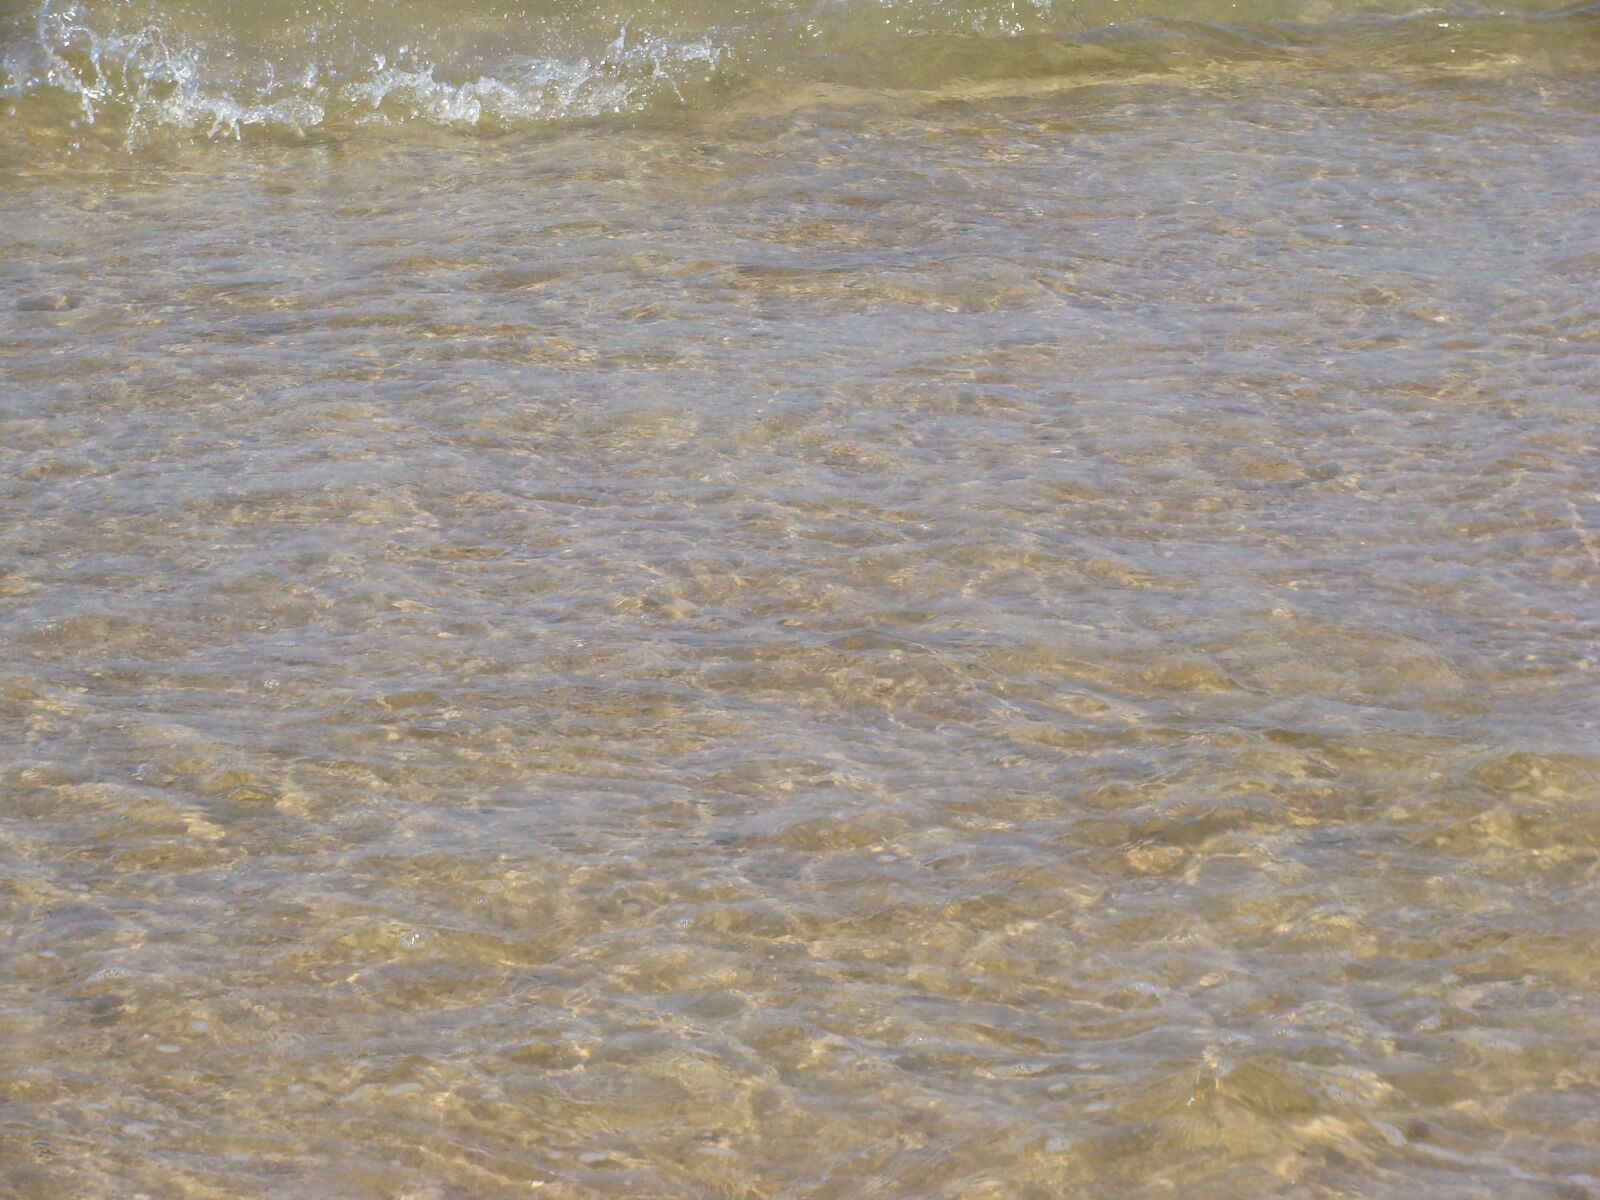 Sony DSC-H3 sample photo. Sea, sand, beach photography